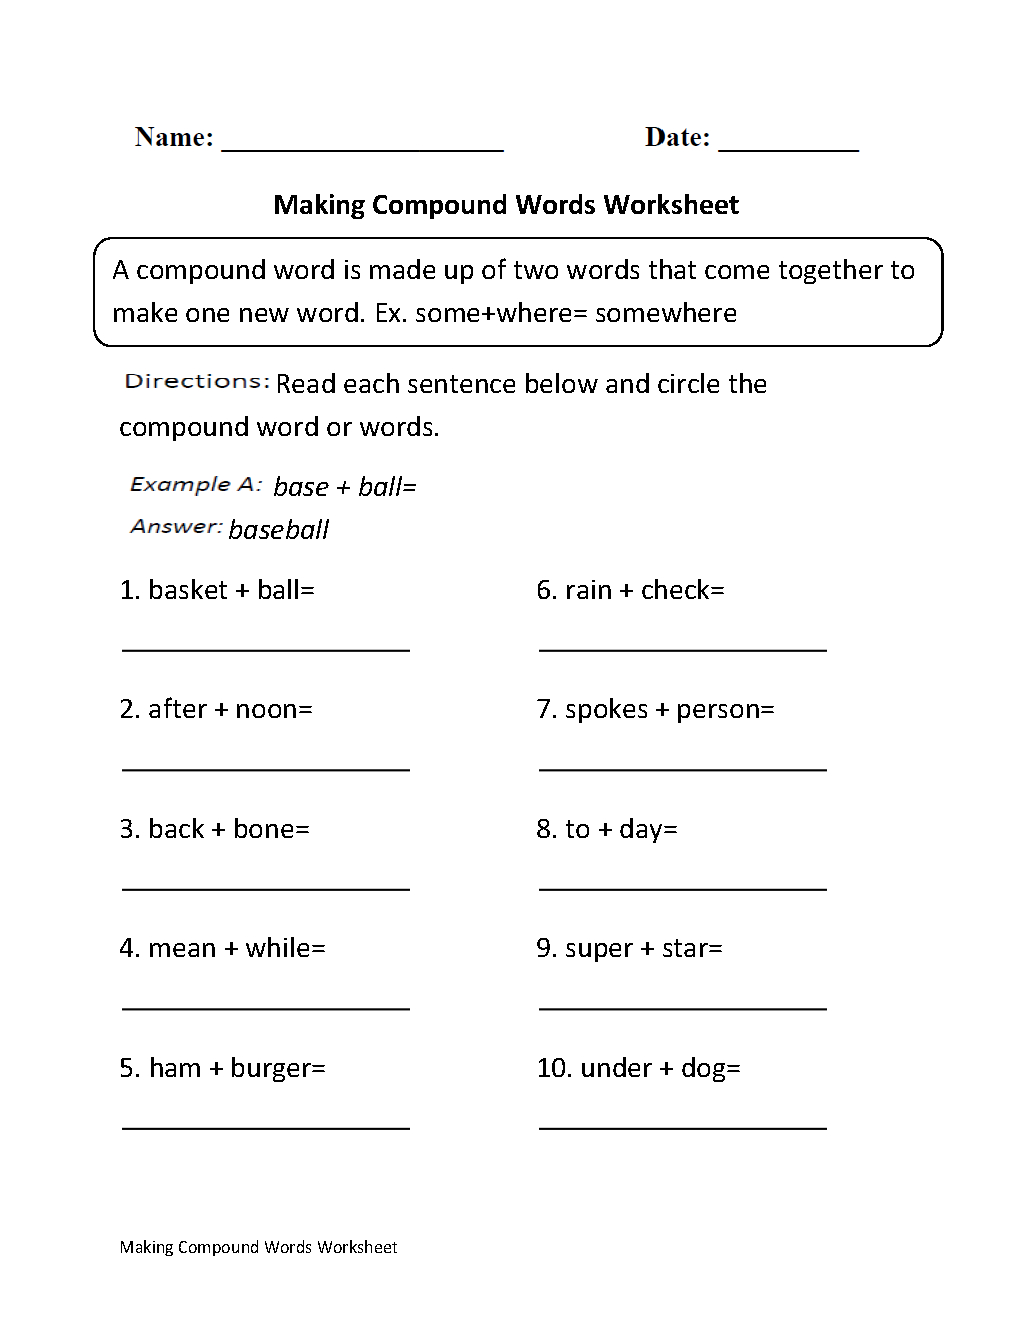 Making Compound Words Worksheet Part 1 Beginner | Compound